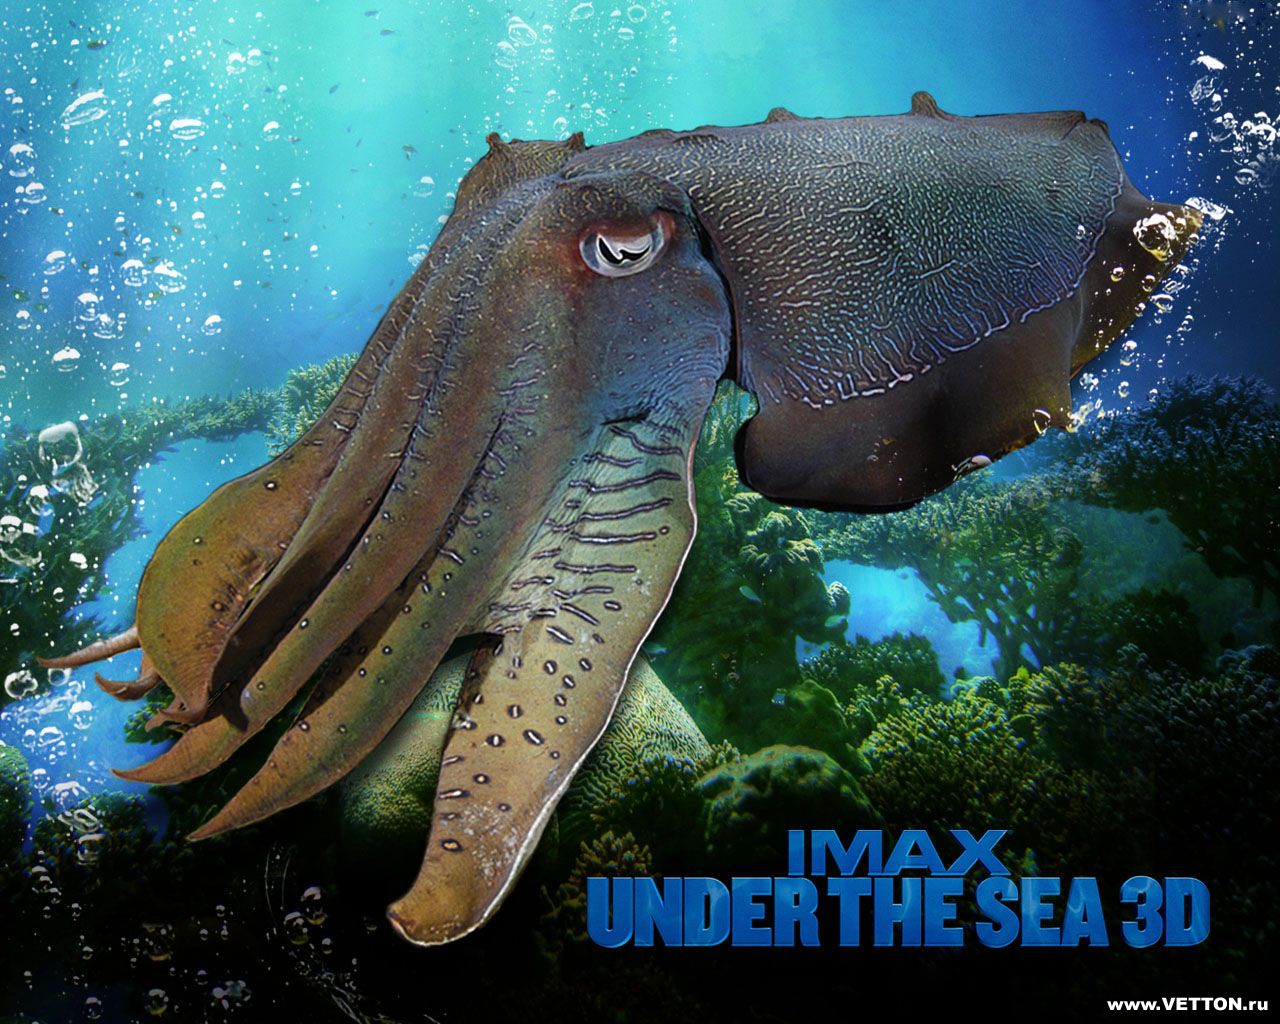 Imax Under The Sea 3d Wallpaper E Entertainment